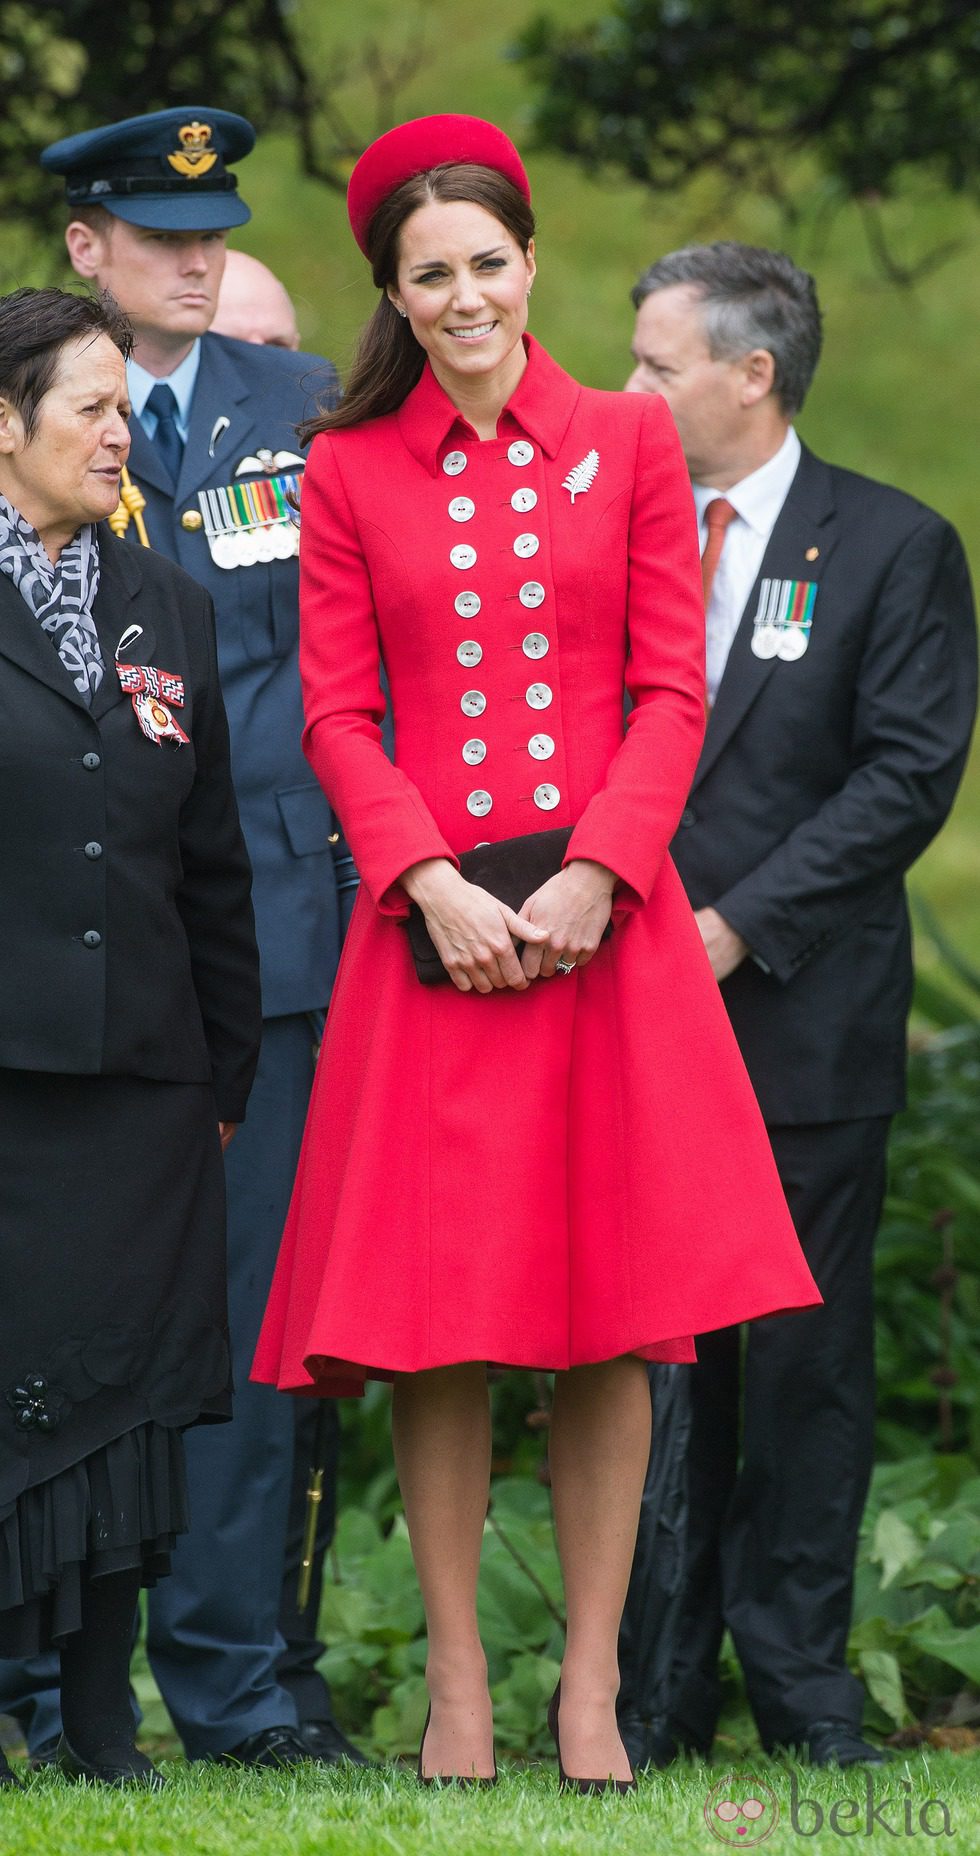 La Duquesa de Cambridge con un look muy Jackie Kennedy en Nueva Zelanda